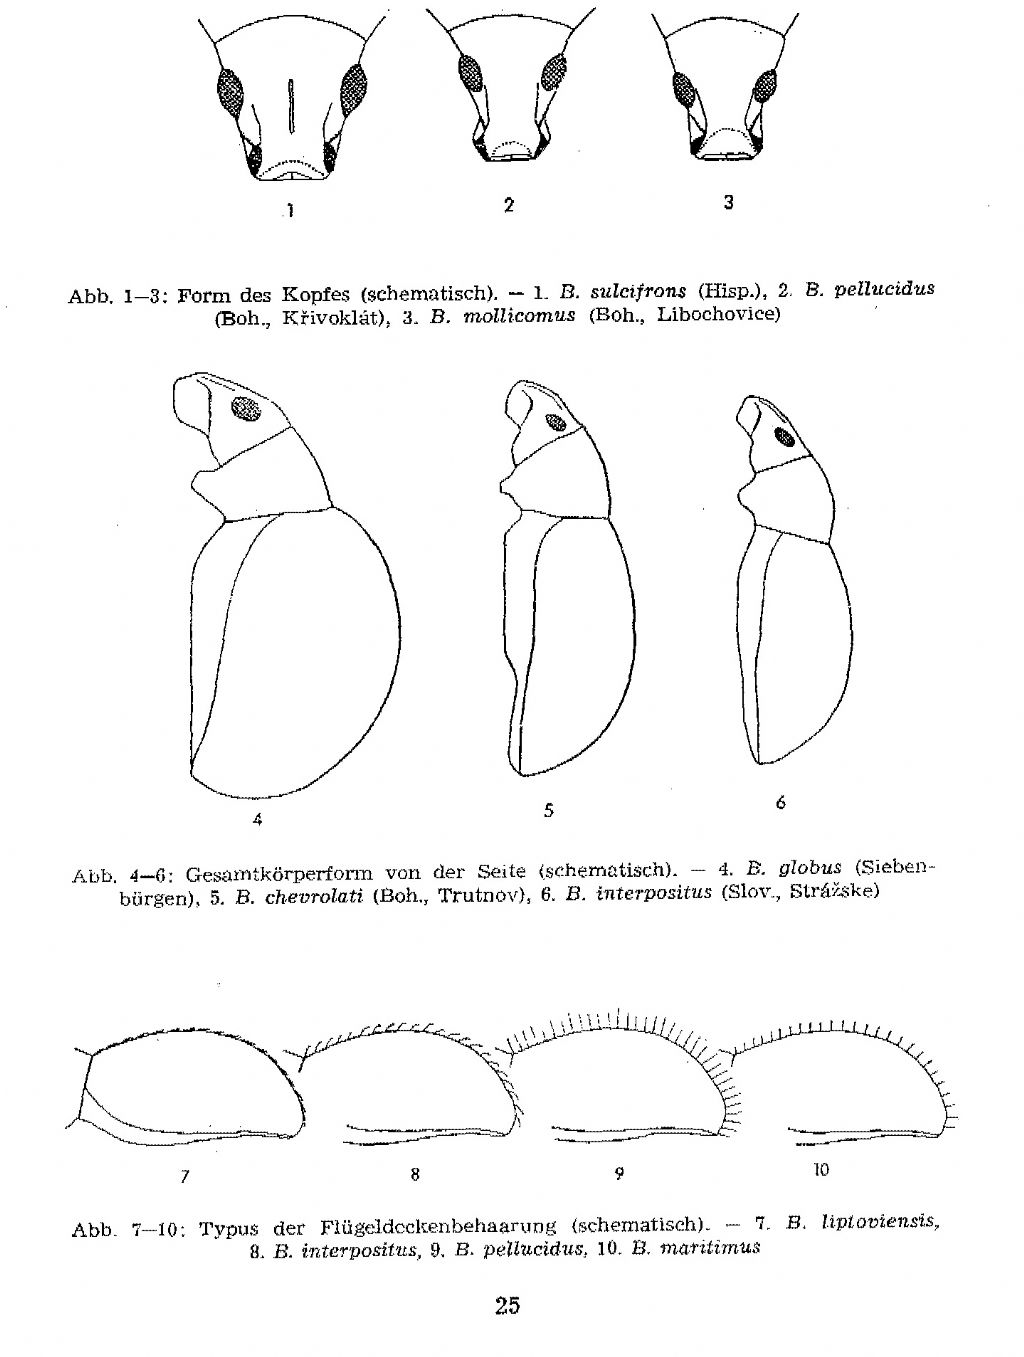 Curculionidae: Exomias pellucidus pellucidus